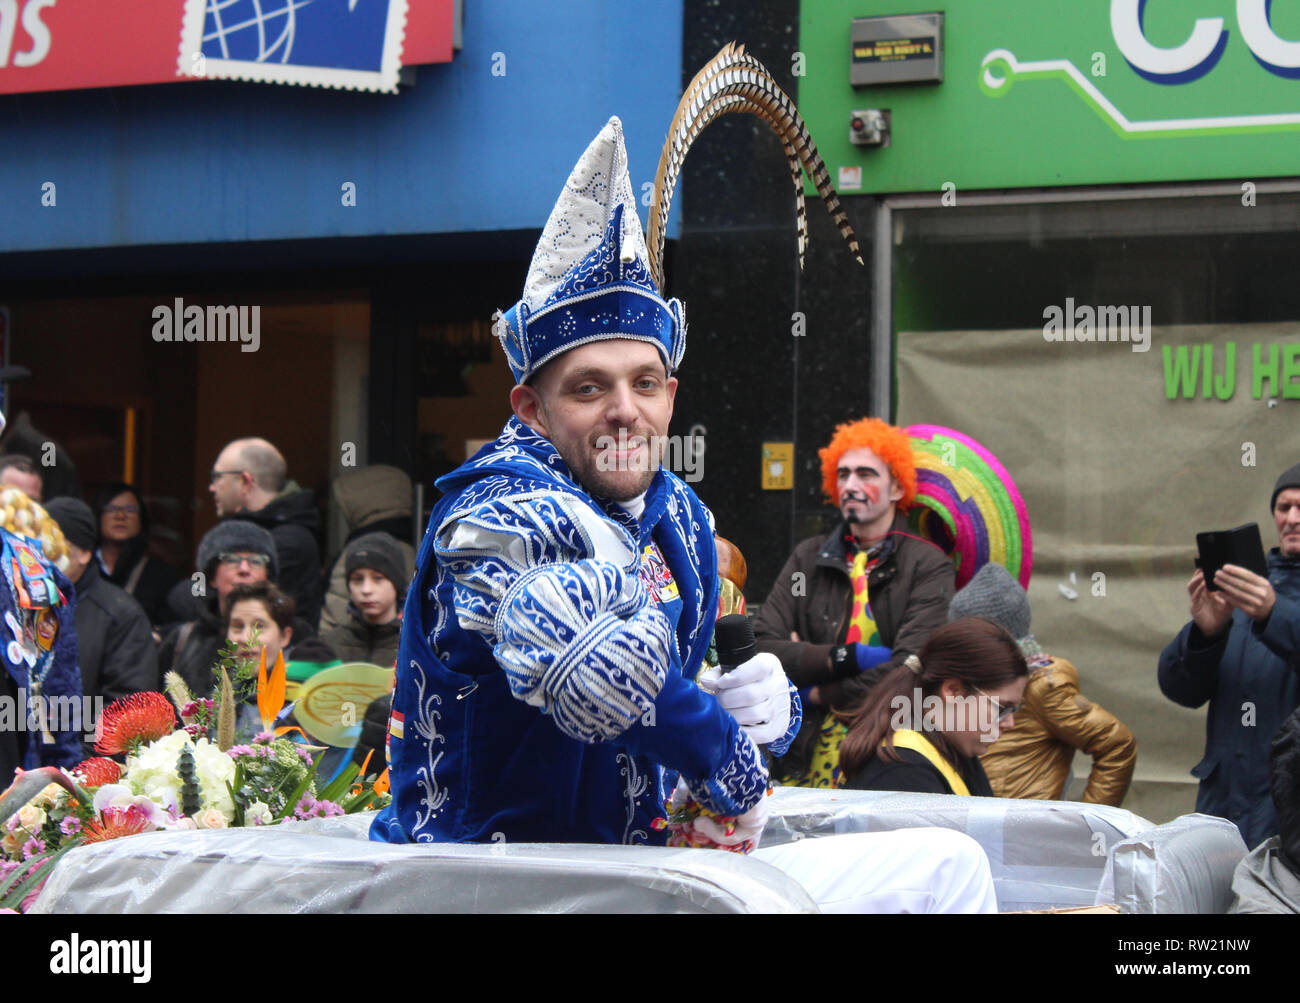 Aalst, Belgien. 3. März, 2019. Karneval Prinz Bart de Meyst reist in einem oben offenen Auto während der jährlichen Karnevalsumzug in Aalst, Ostflandern. Credit: Imladris/Alamy leben Nachrichten Stockfoto